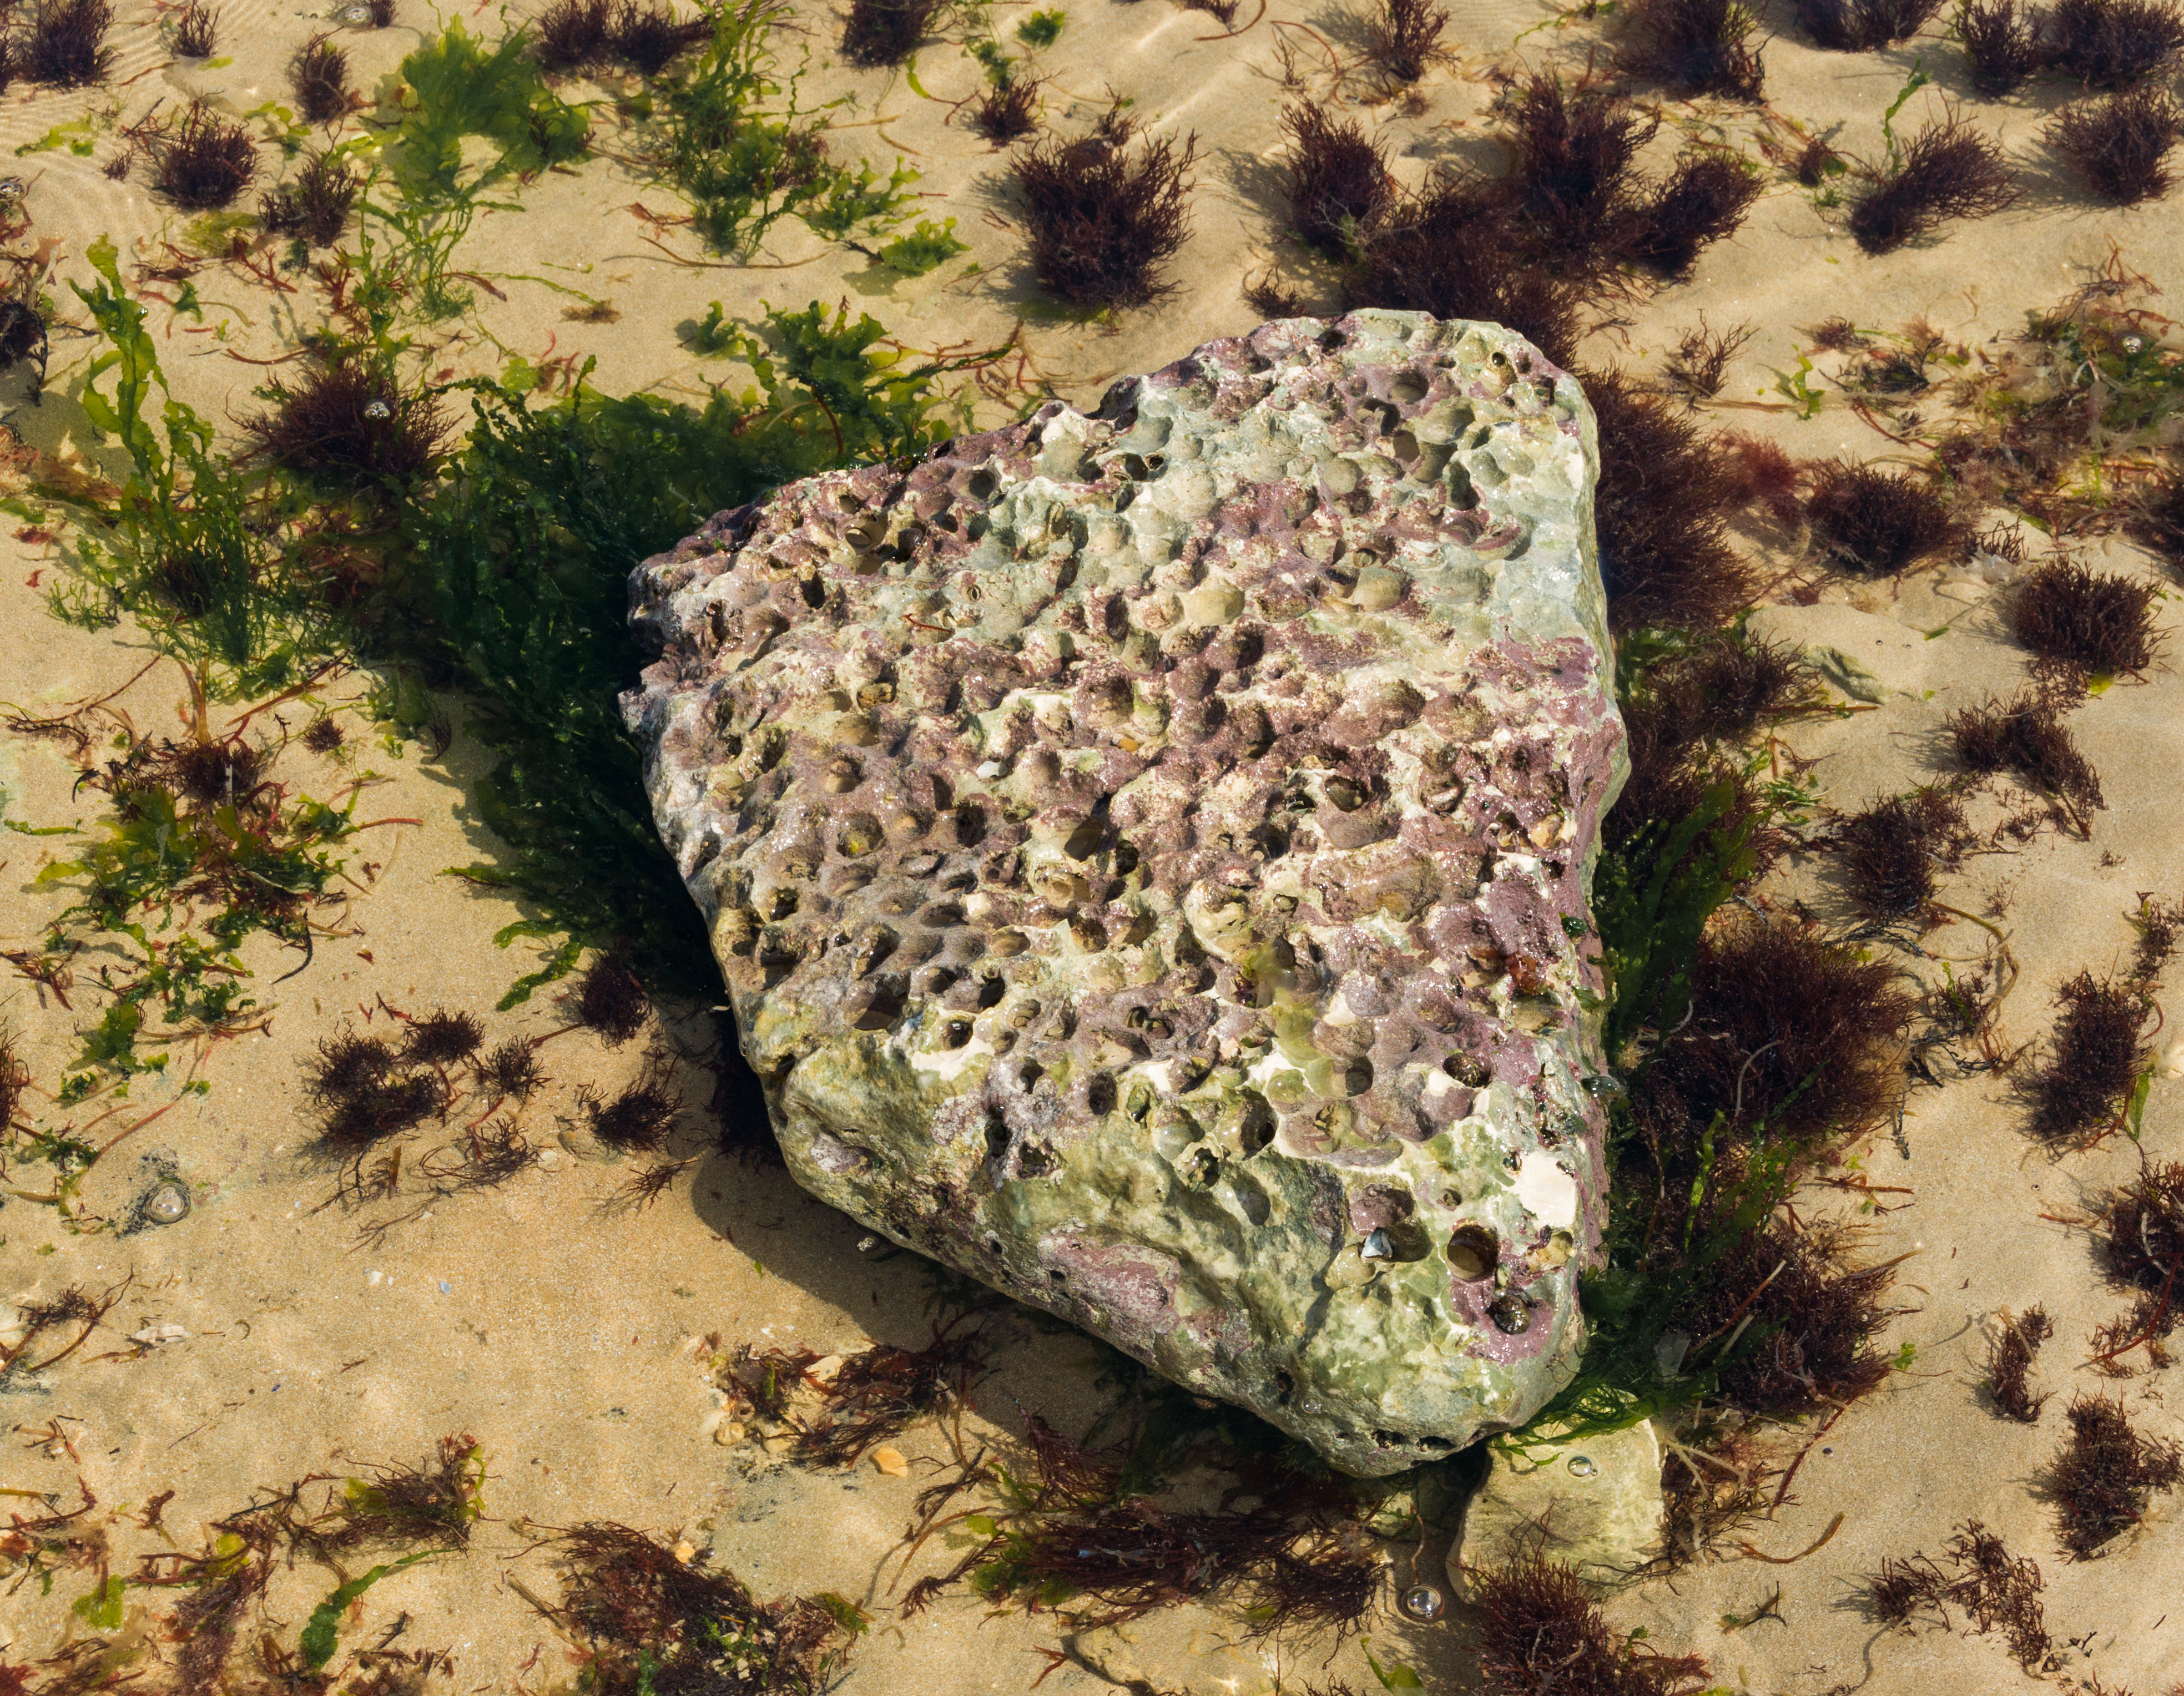 Pebble in water, Sainte-Marie-de-Ré, Ré island, Charente-Maritime, France